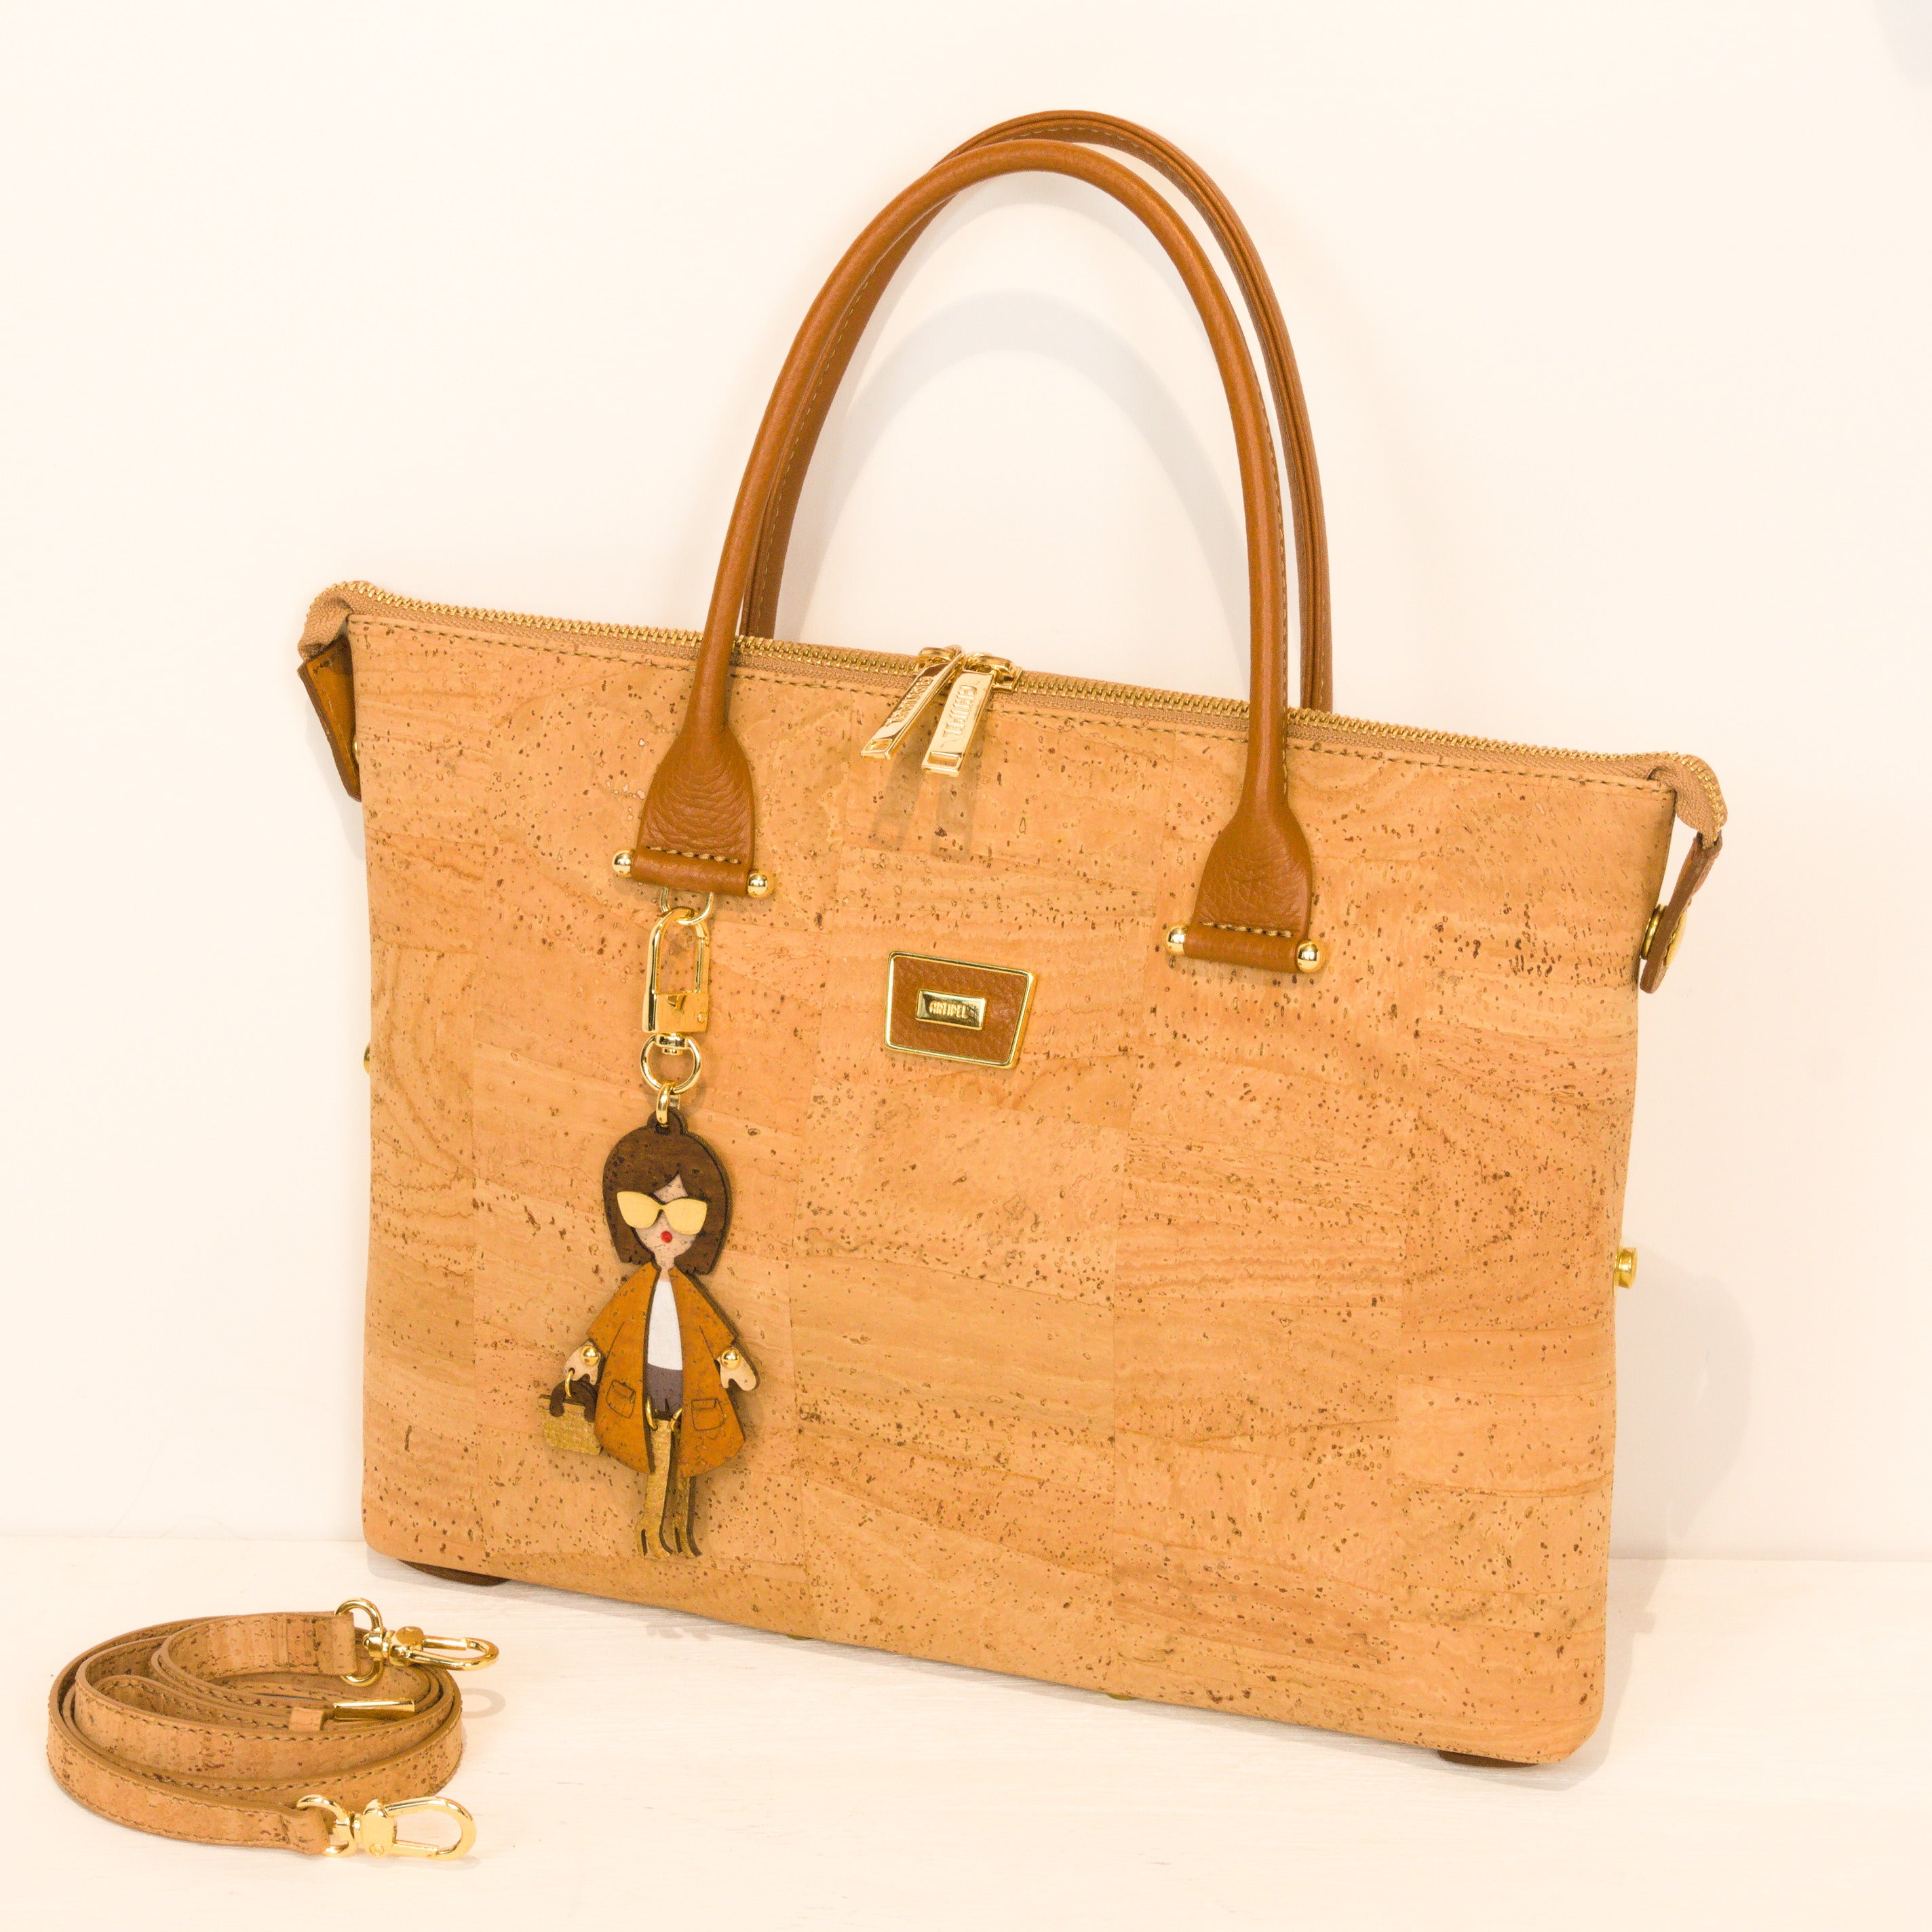 Kork Handtasche 3in1 * 2 Größen * verschiedene Designs * Umhängetasche für Frauen * Crossbody * Shopper * handmade in Portugal